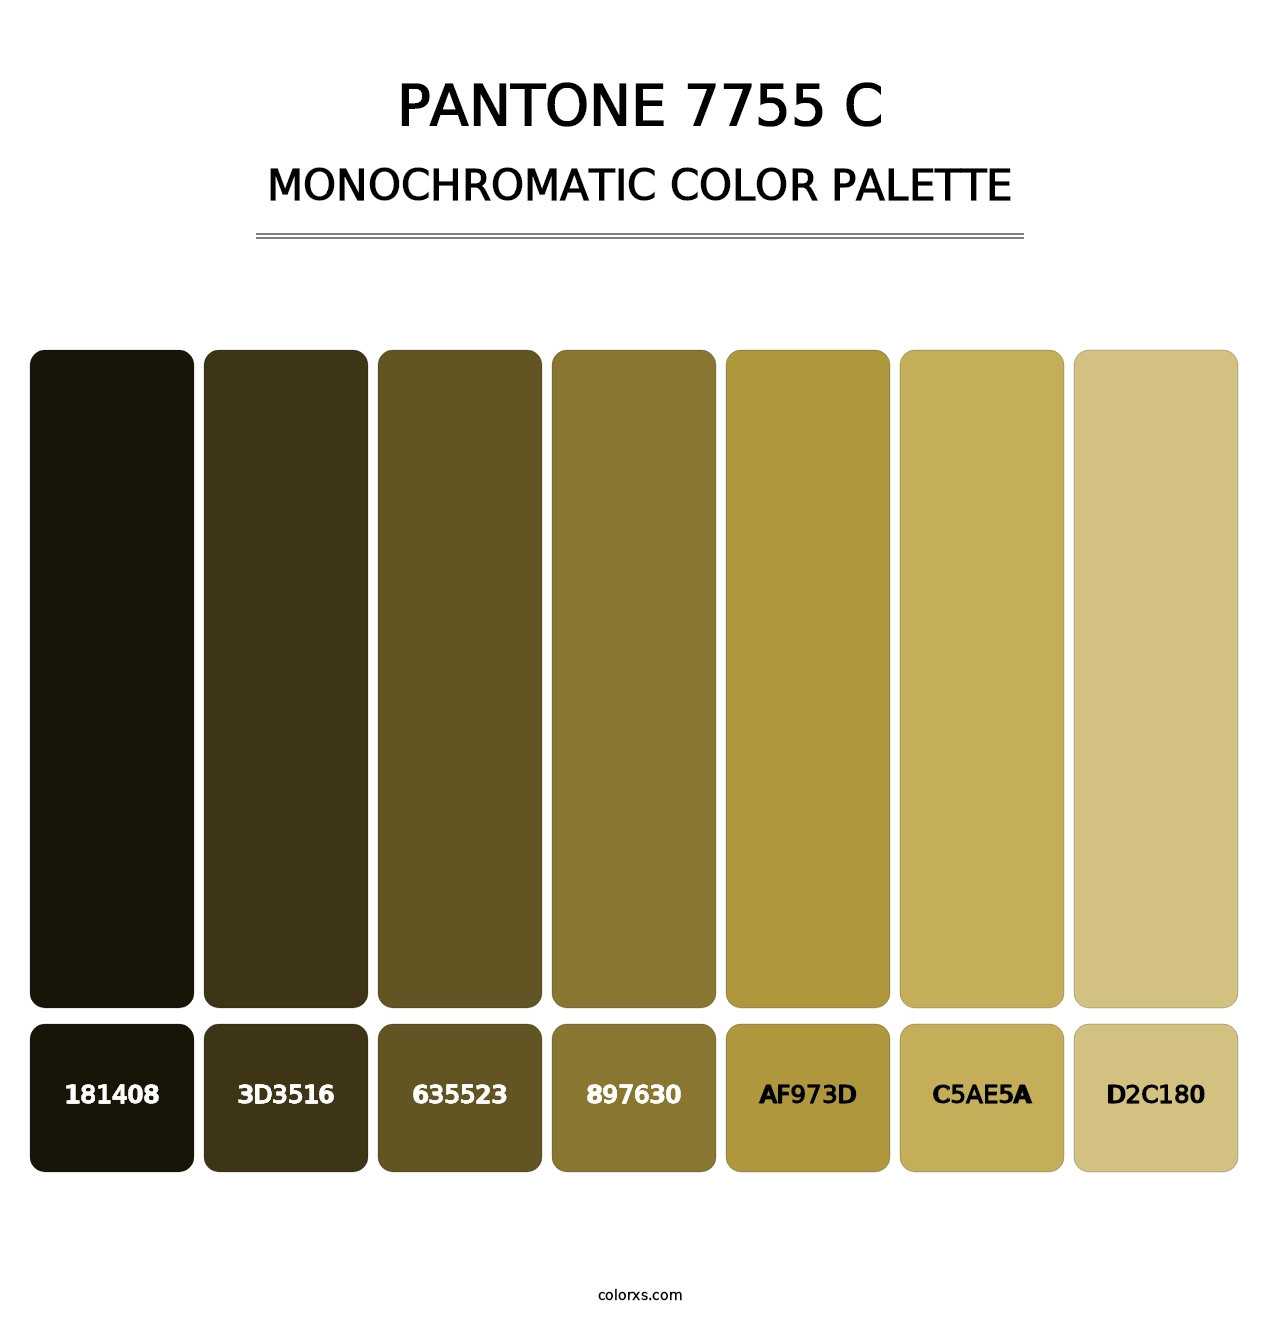 PANTONE 7755 C - Monochromatic Color Palette